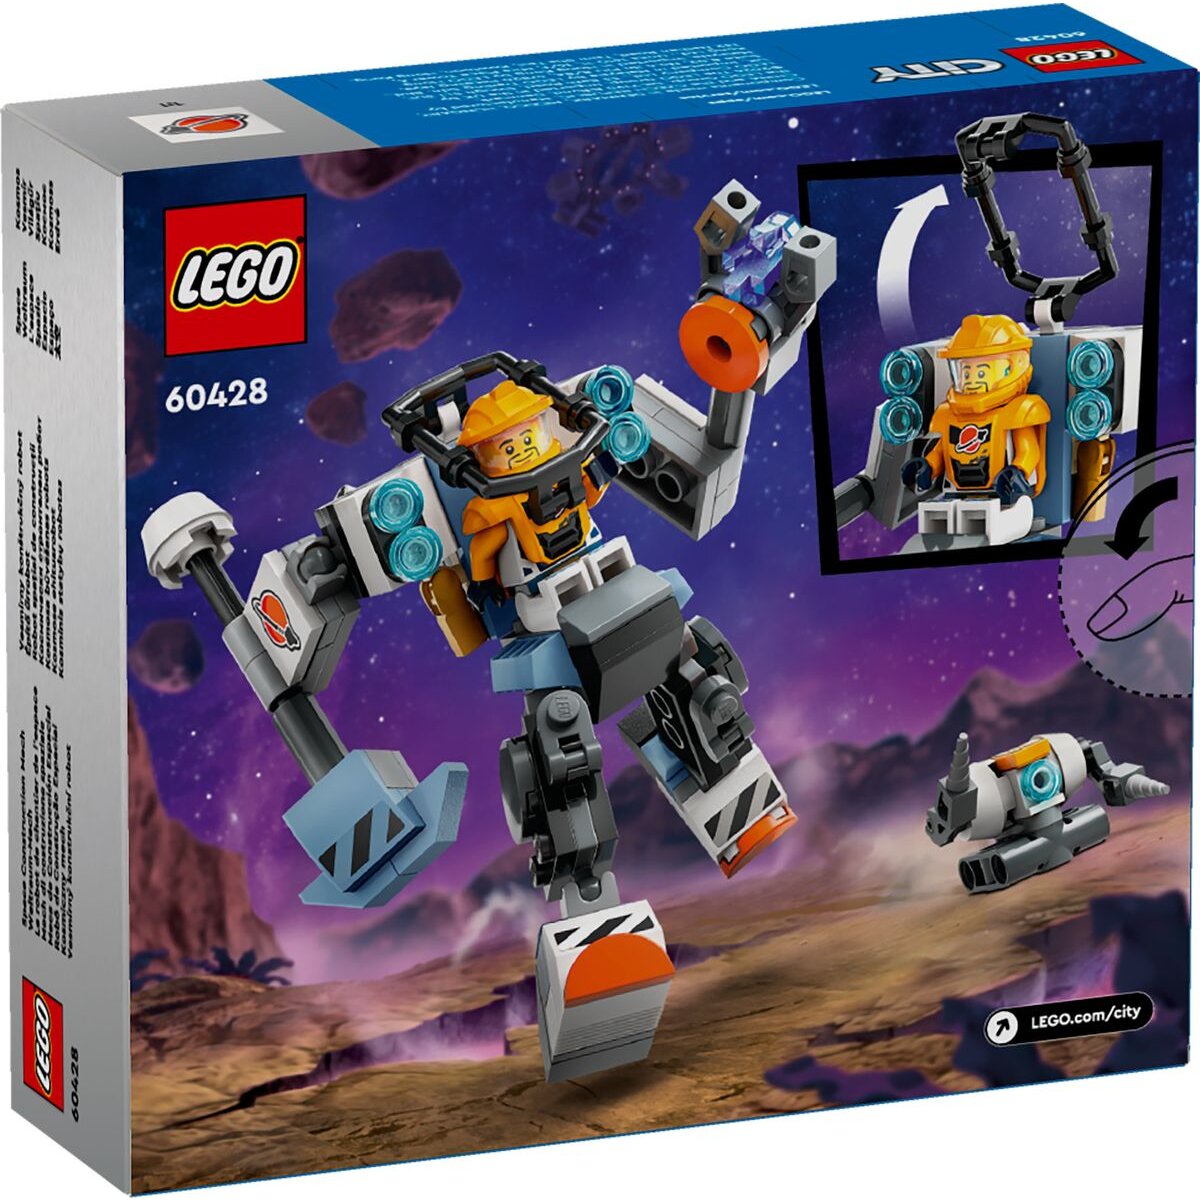 LEGO® City 60428 Weltraum-Mech, Set mit Roboter-Spielzeug ab 6 Jahren